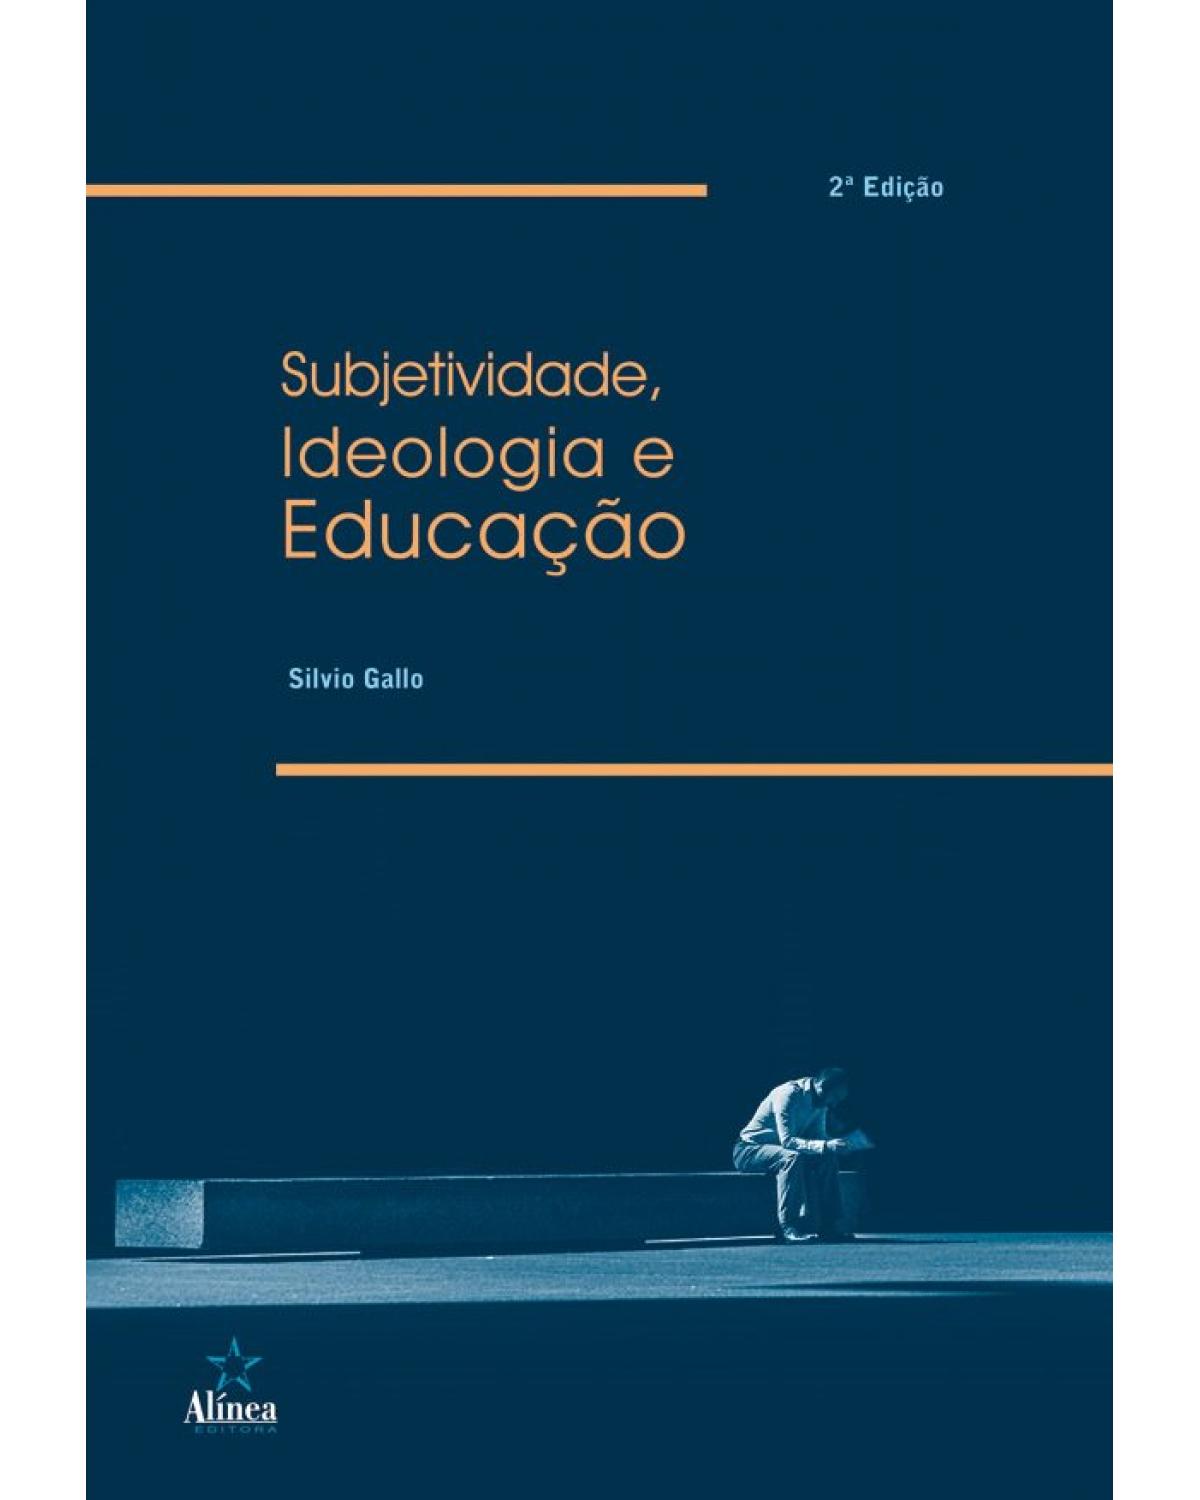 Subjetividade, ideologia e educação - 2ª Edição | 2019